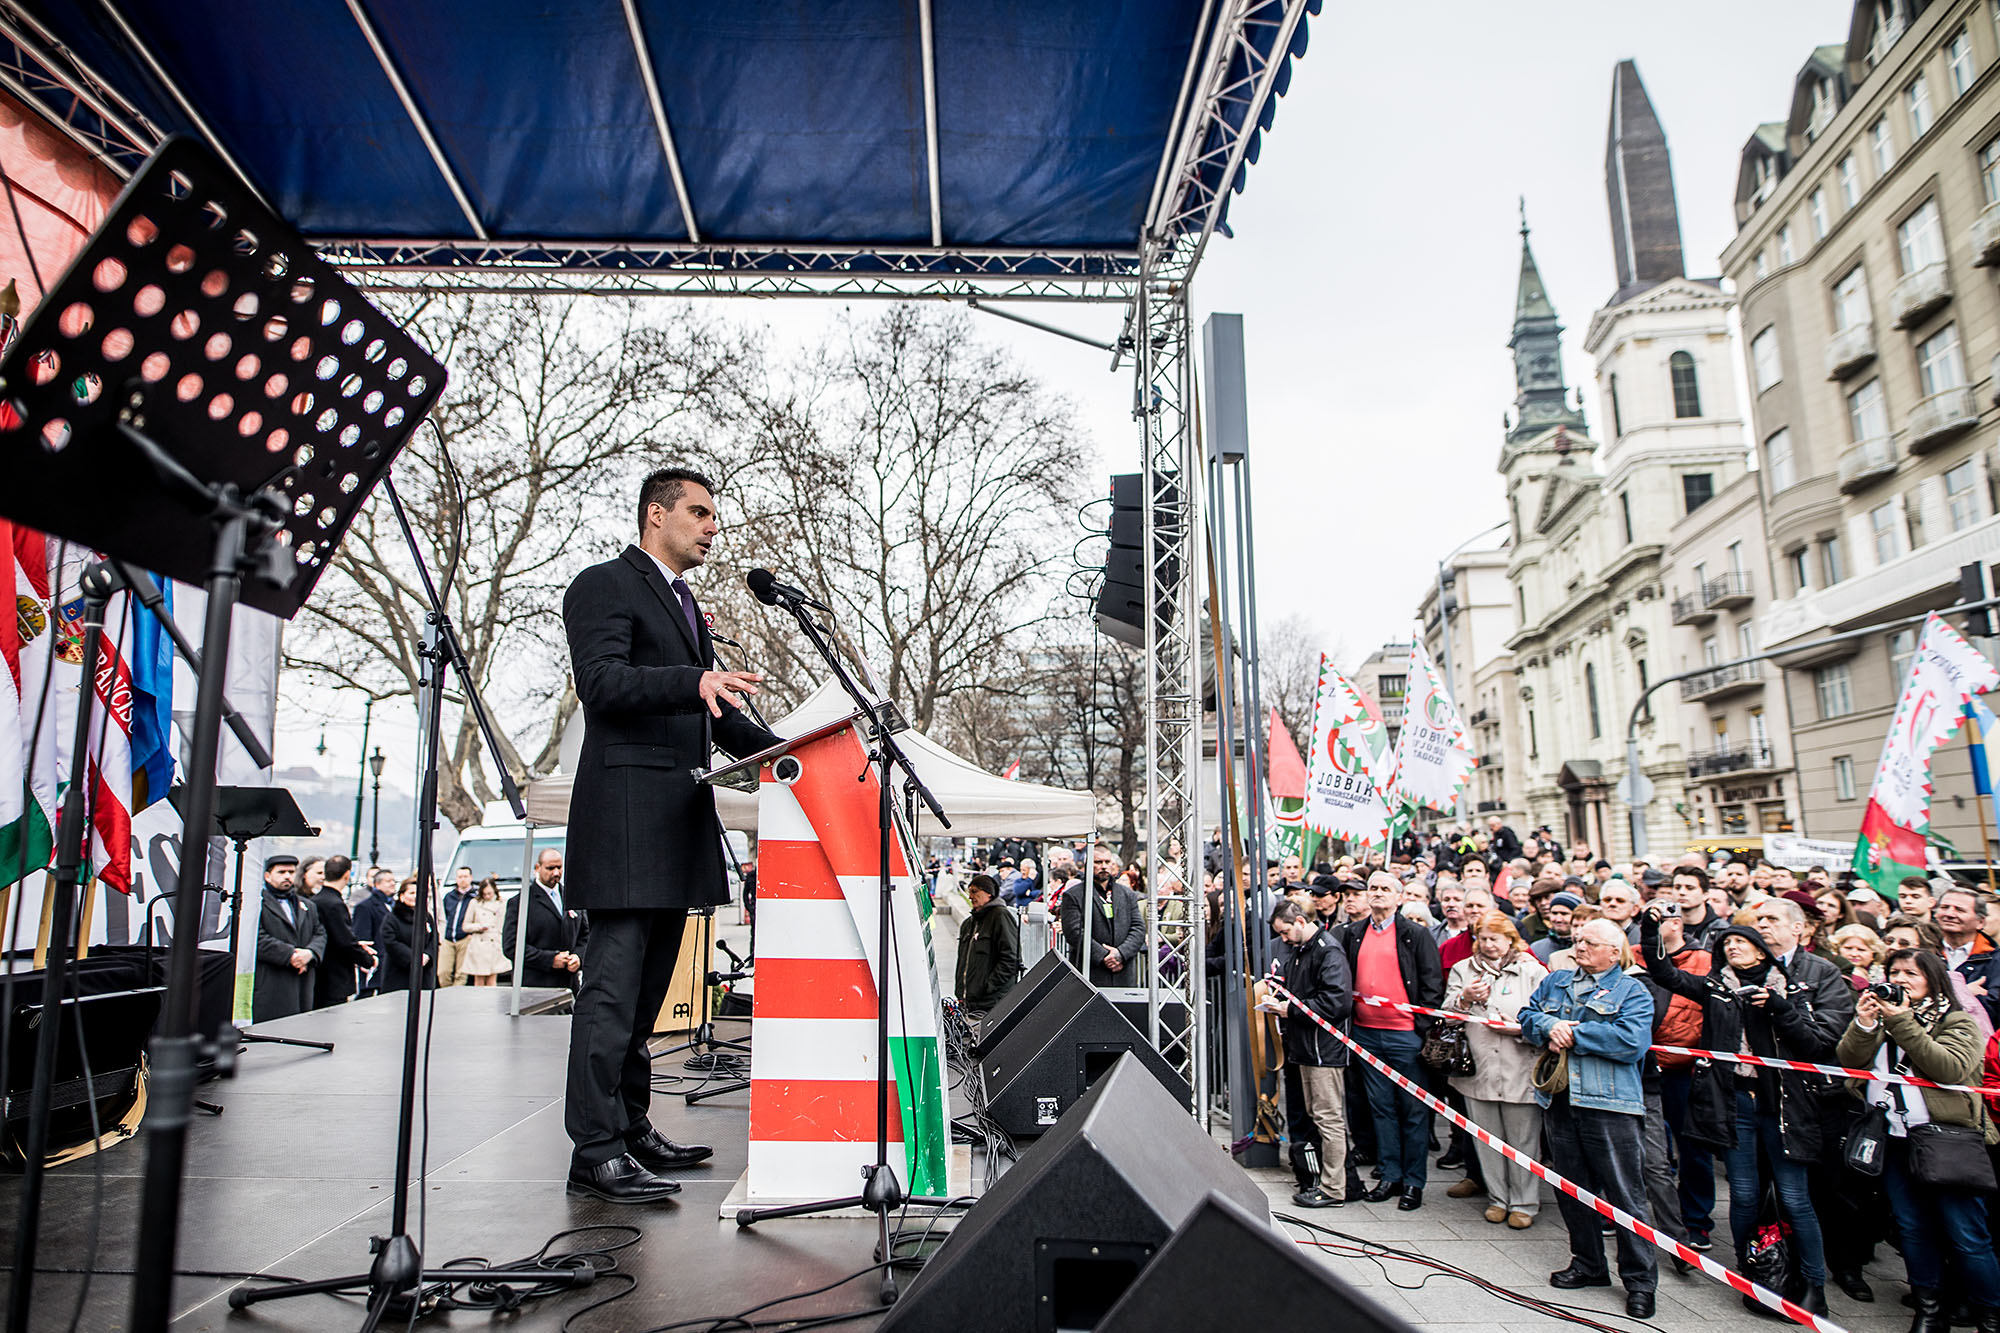 Ma sokan otthon hagyták az eszüket: Orbán bakizott, a Jobbik csokizott, Majtényi beverte a fejét 1